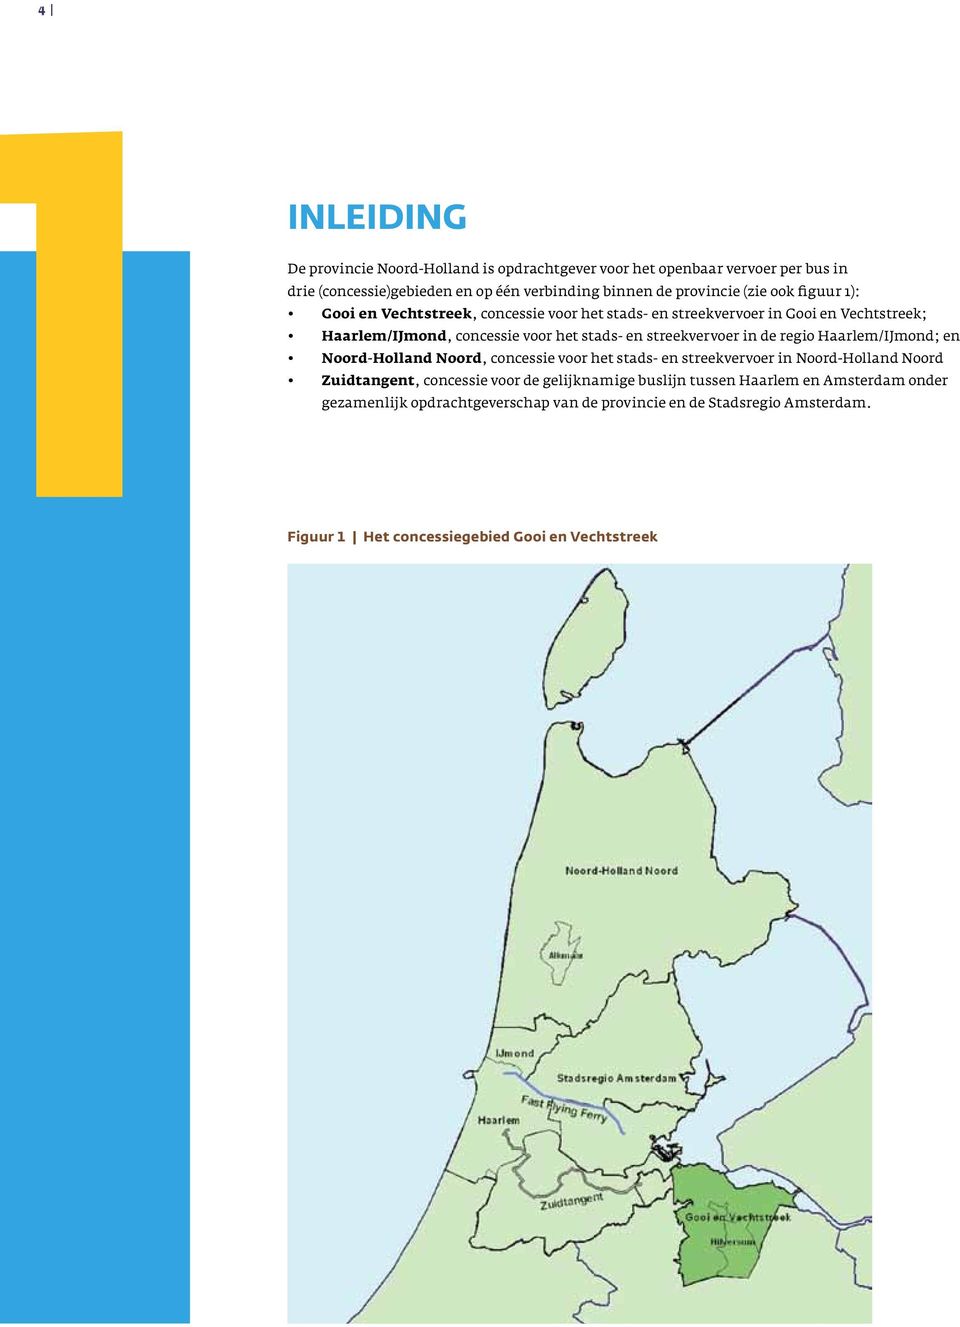 in de regio Haarlem/IJmond; en Noord-Holland Noord, concessie voor het stads- en streekvervoer in Noord-Holland Noord Zuidtangent, concessie voor de gelijknamige